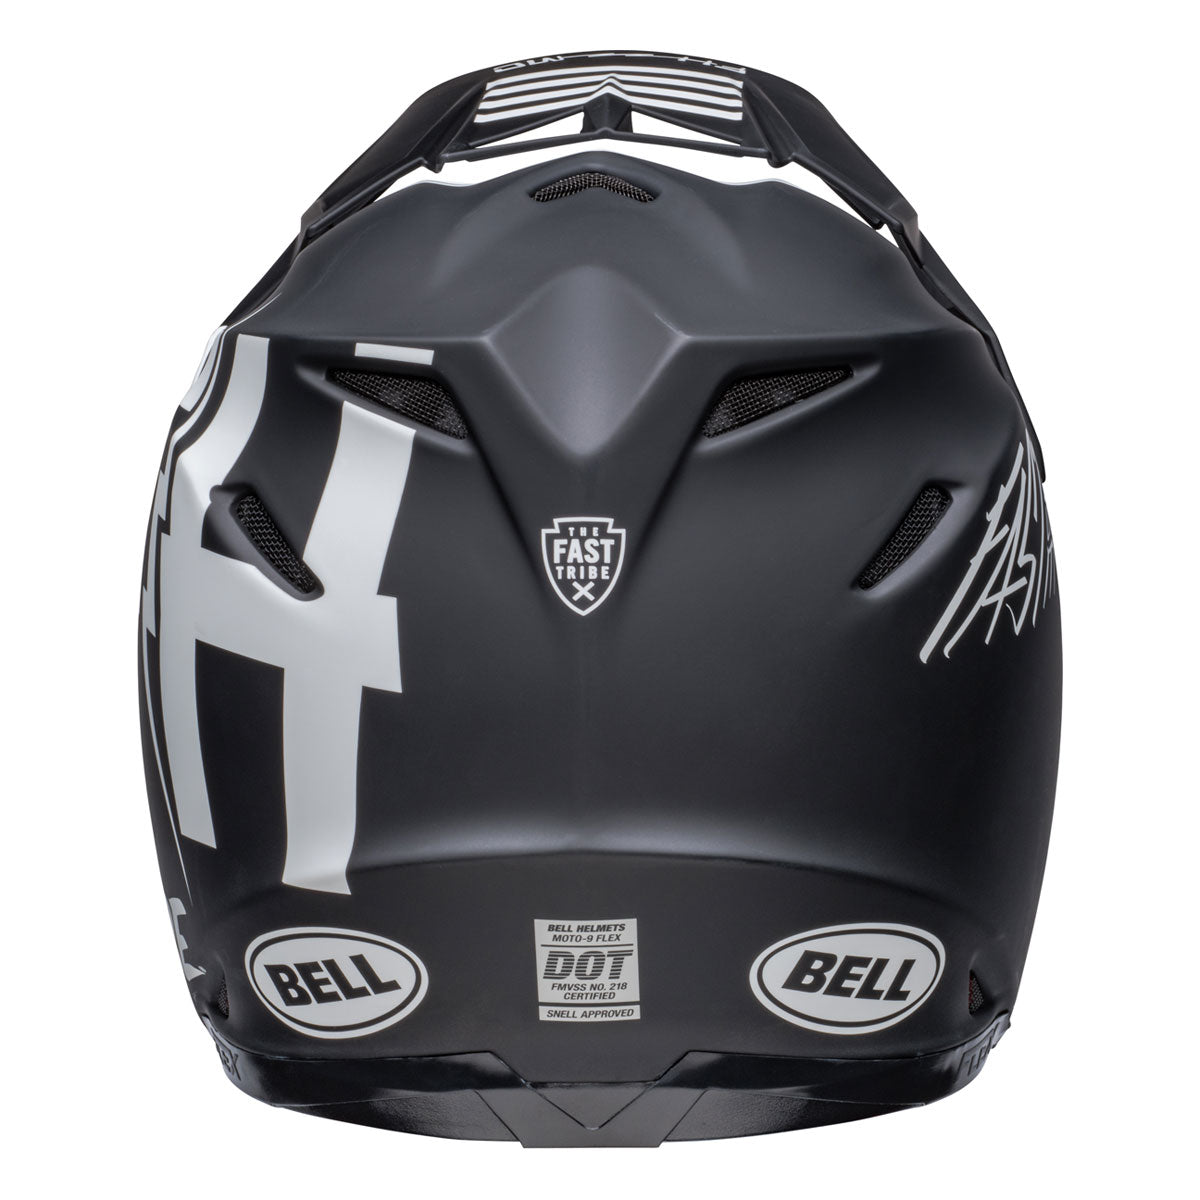 Bell x Fasthouse Tribe Moto 9S Flex Helmet - Black/White